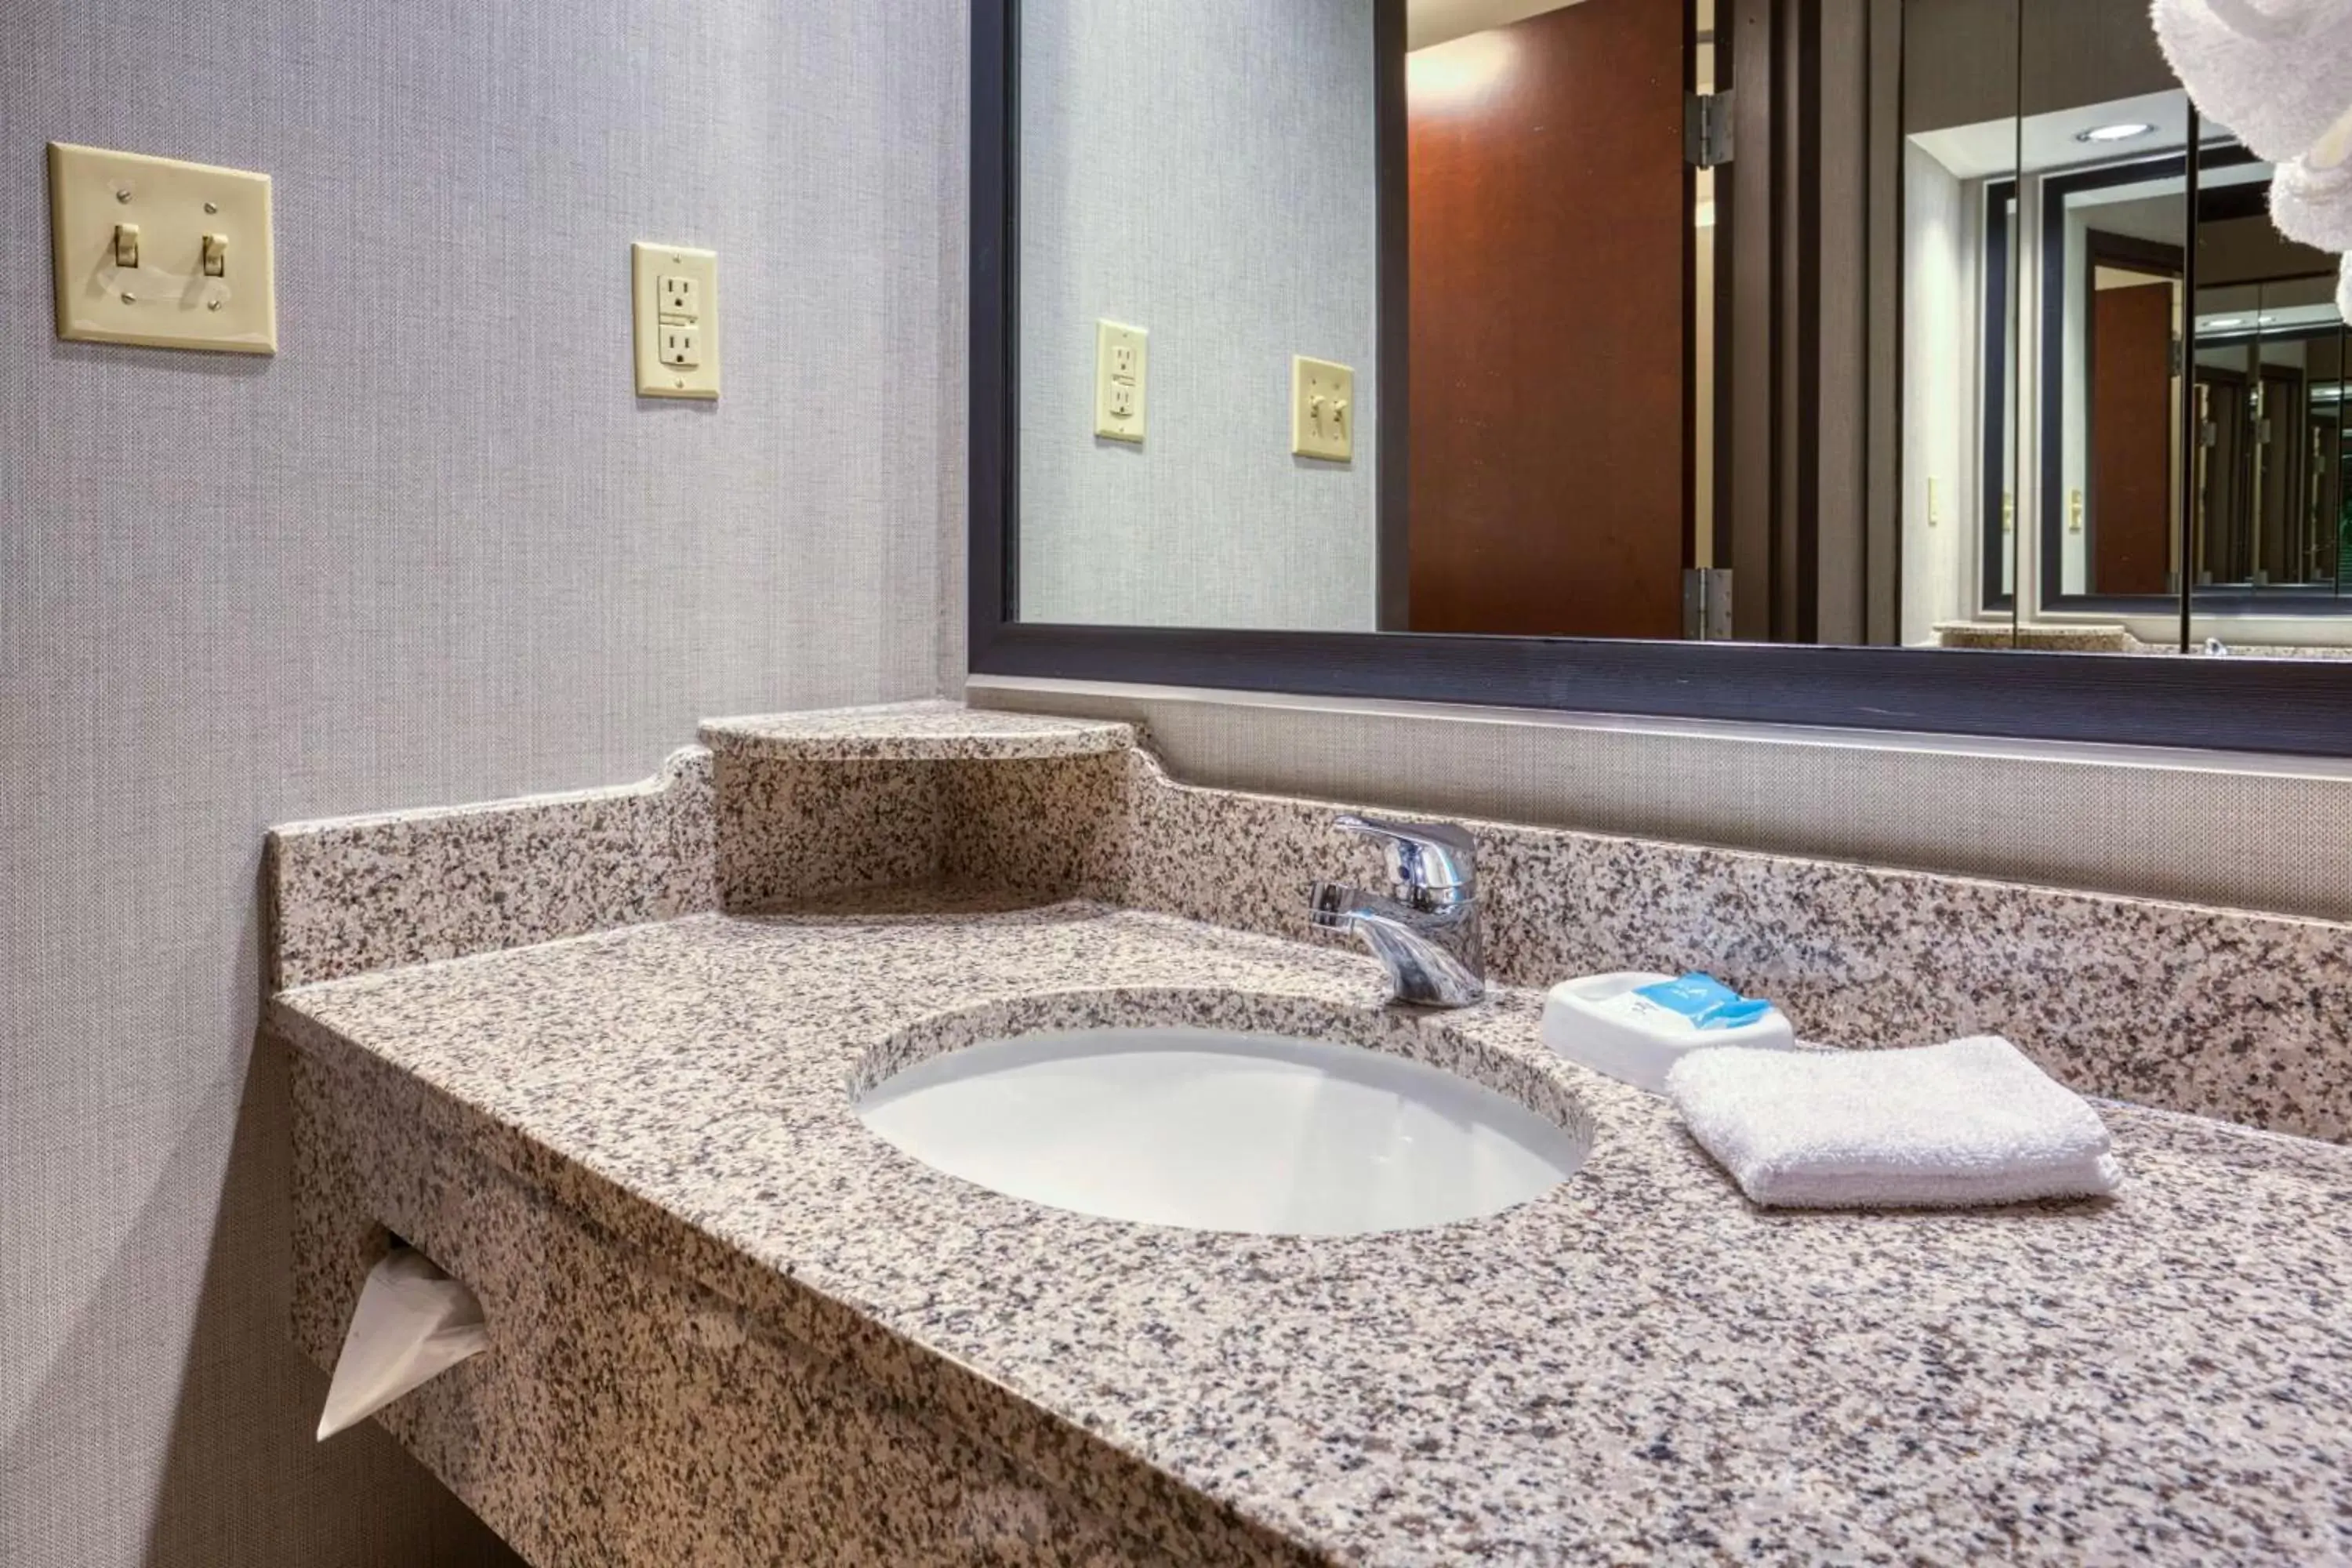 Bathroom in Drury Inn & Suites St. Louis - Fairview Heights